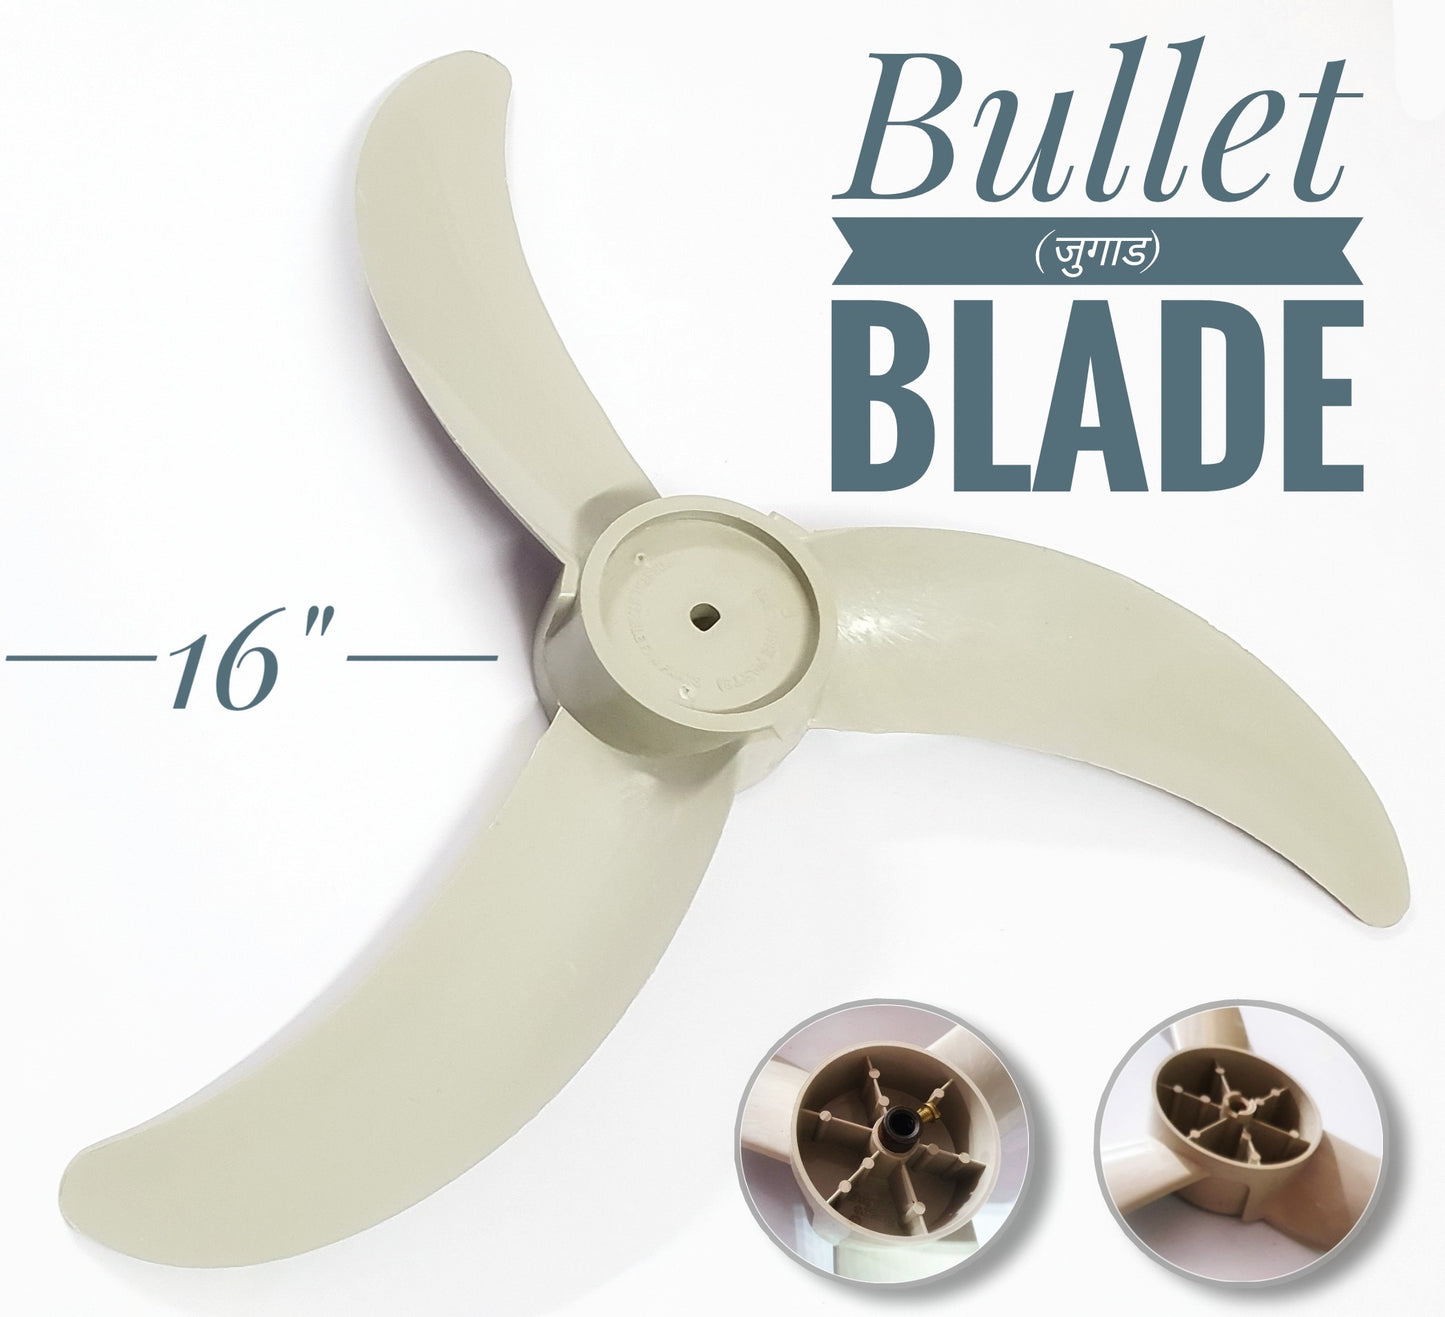 16" 3 leaf Bullet Blade ABS